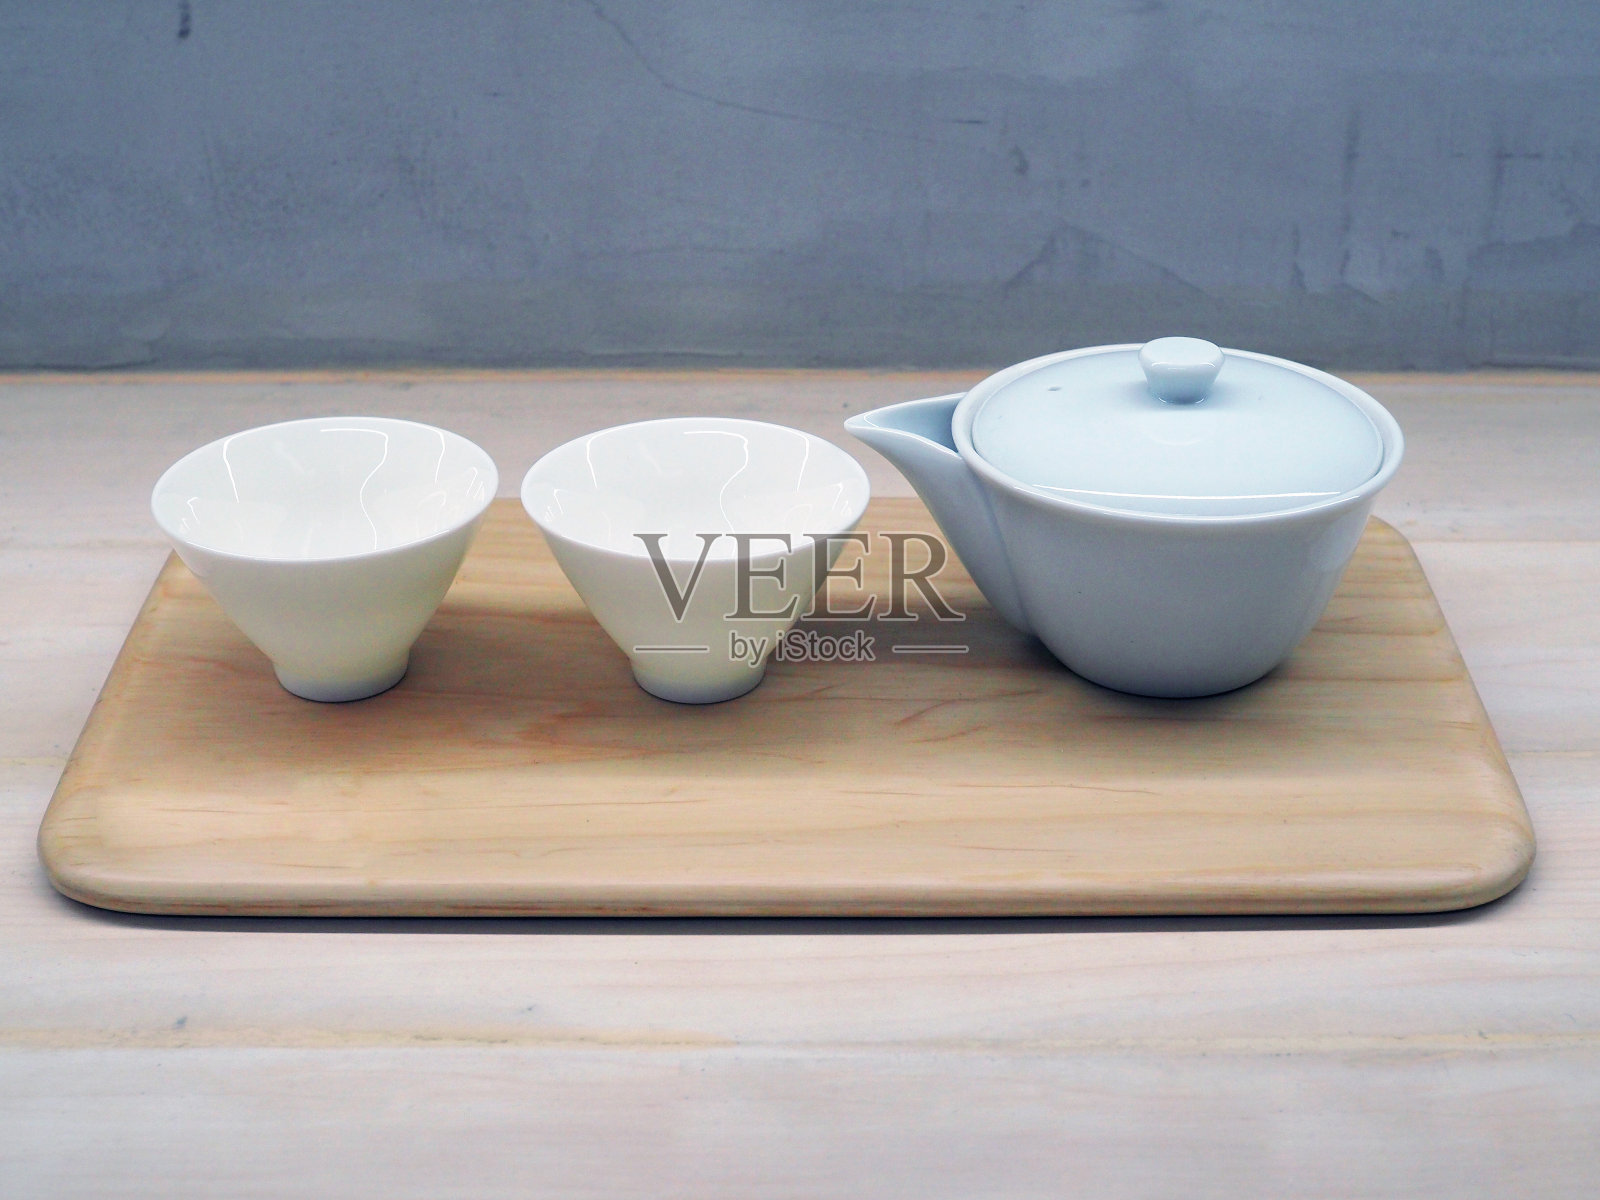 日式陶瓷茶壶、茶杯、木托盘放在桌上;传统、文化、生活方式。照片摄影图片